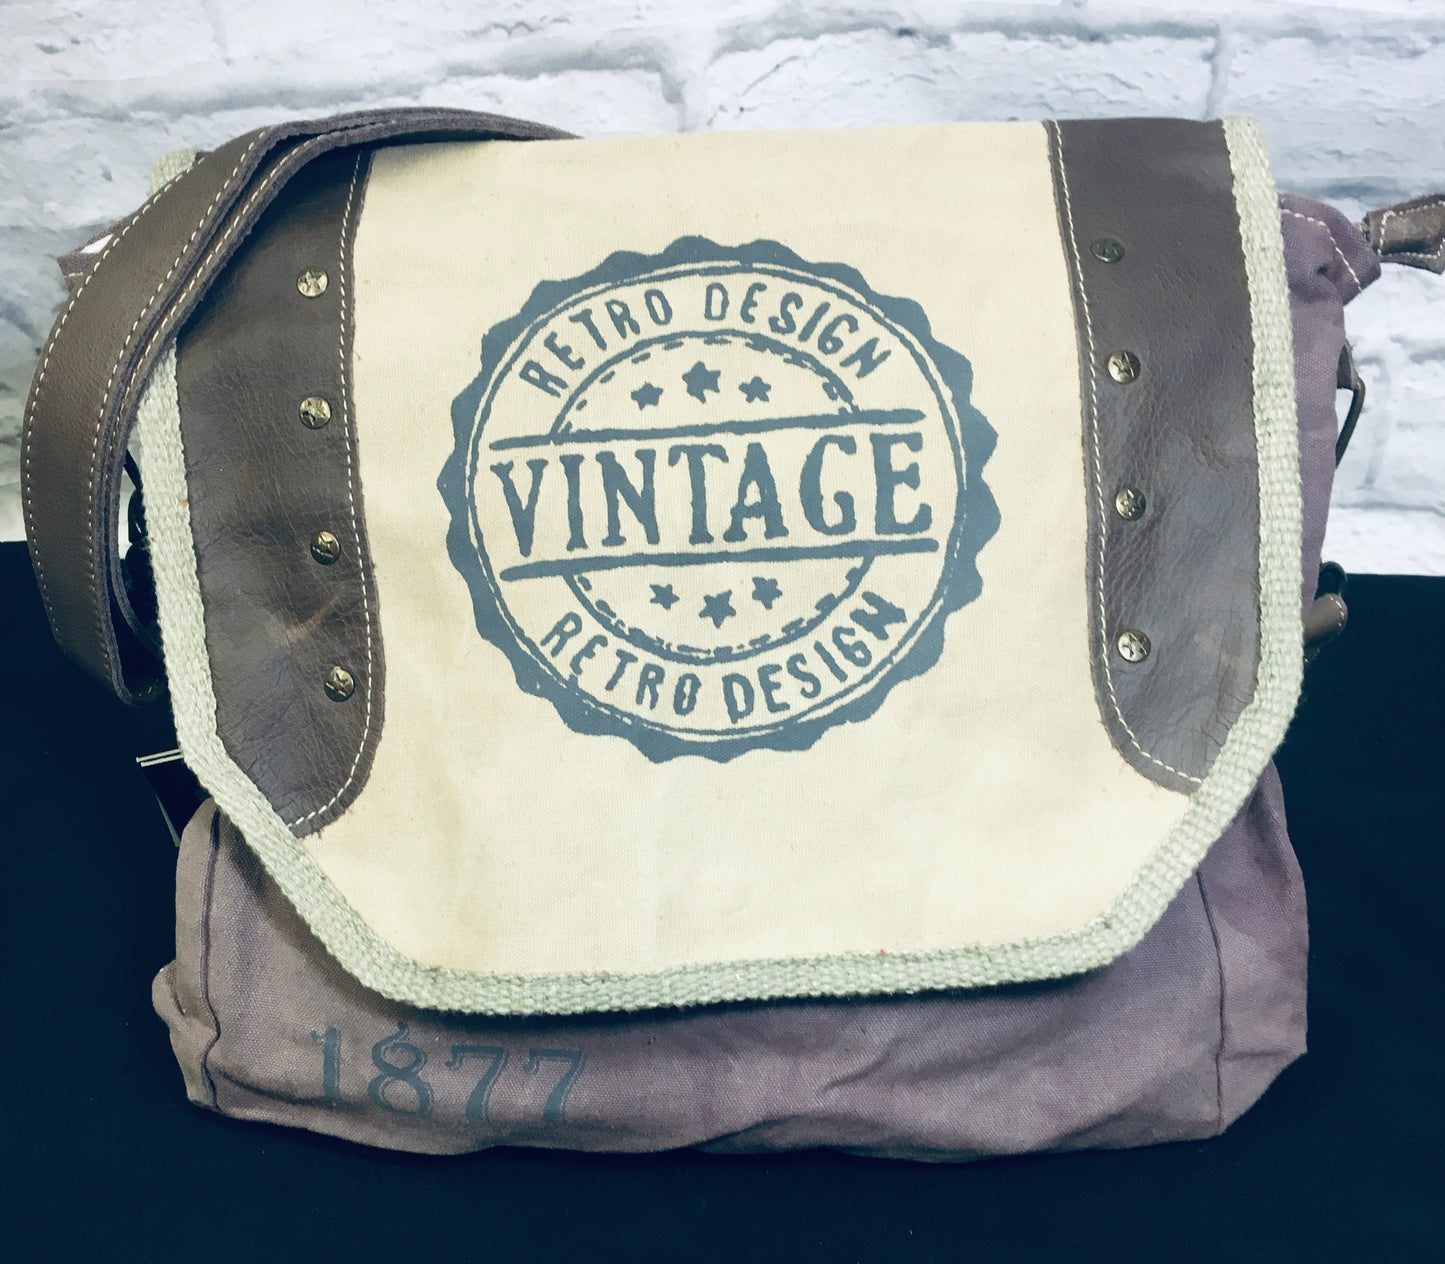 Vintage Konica Shoulder bag